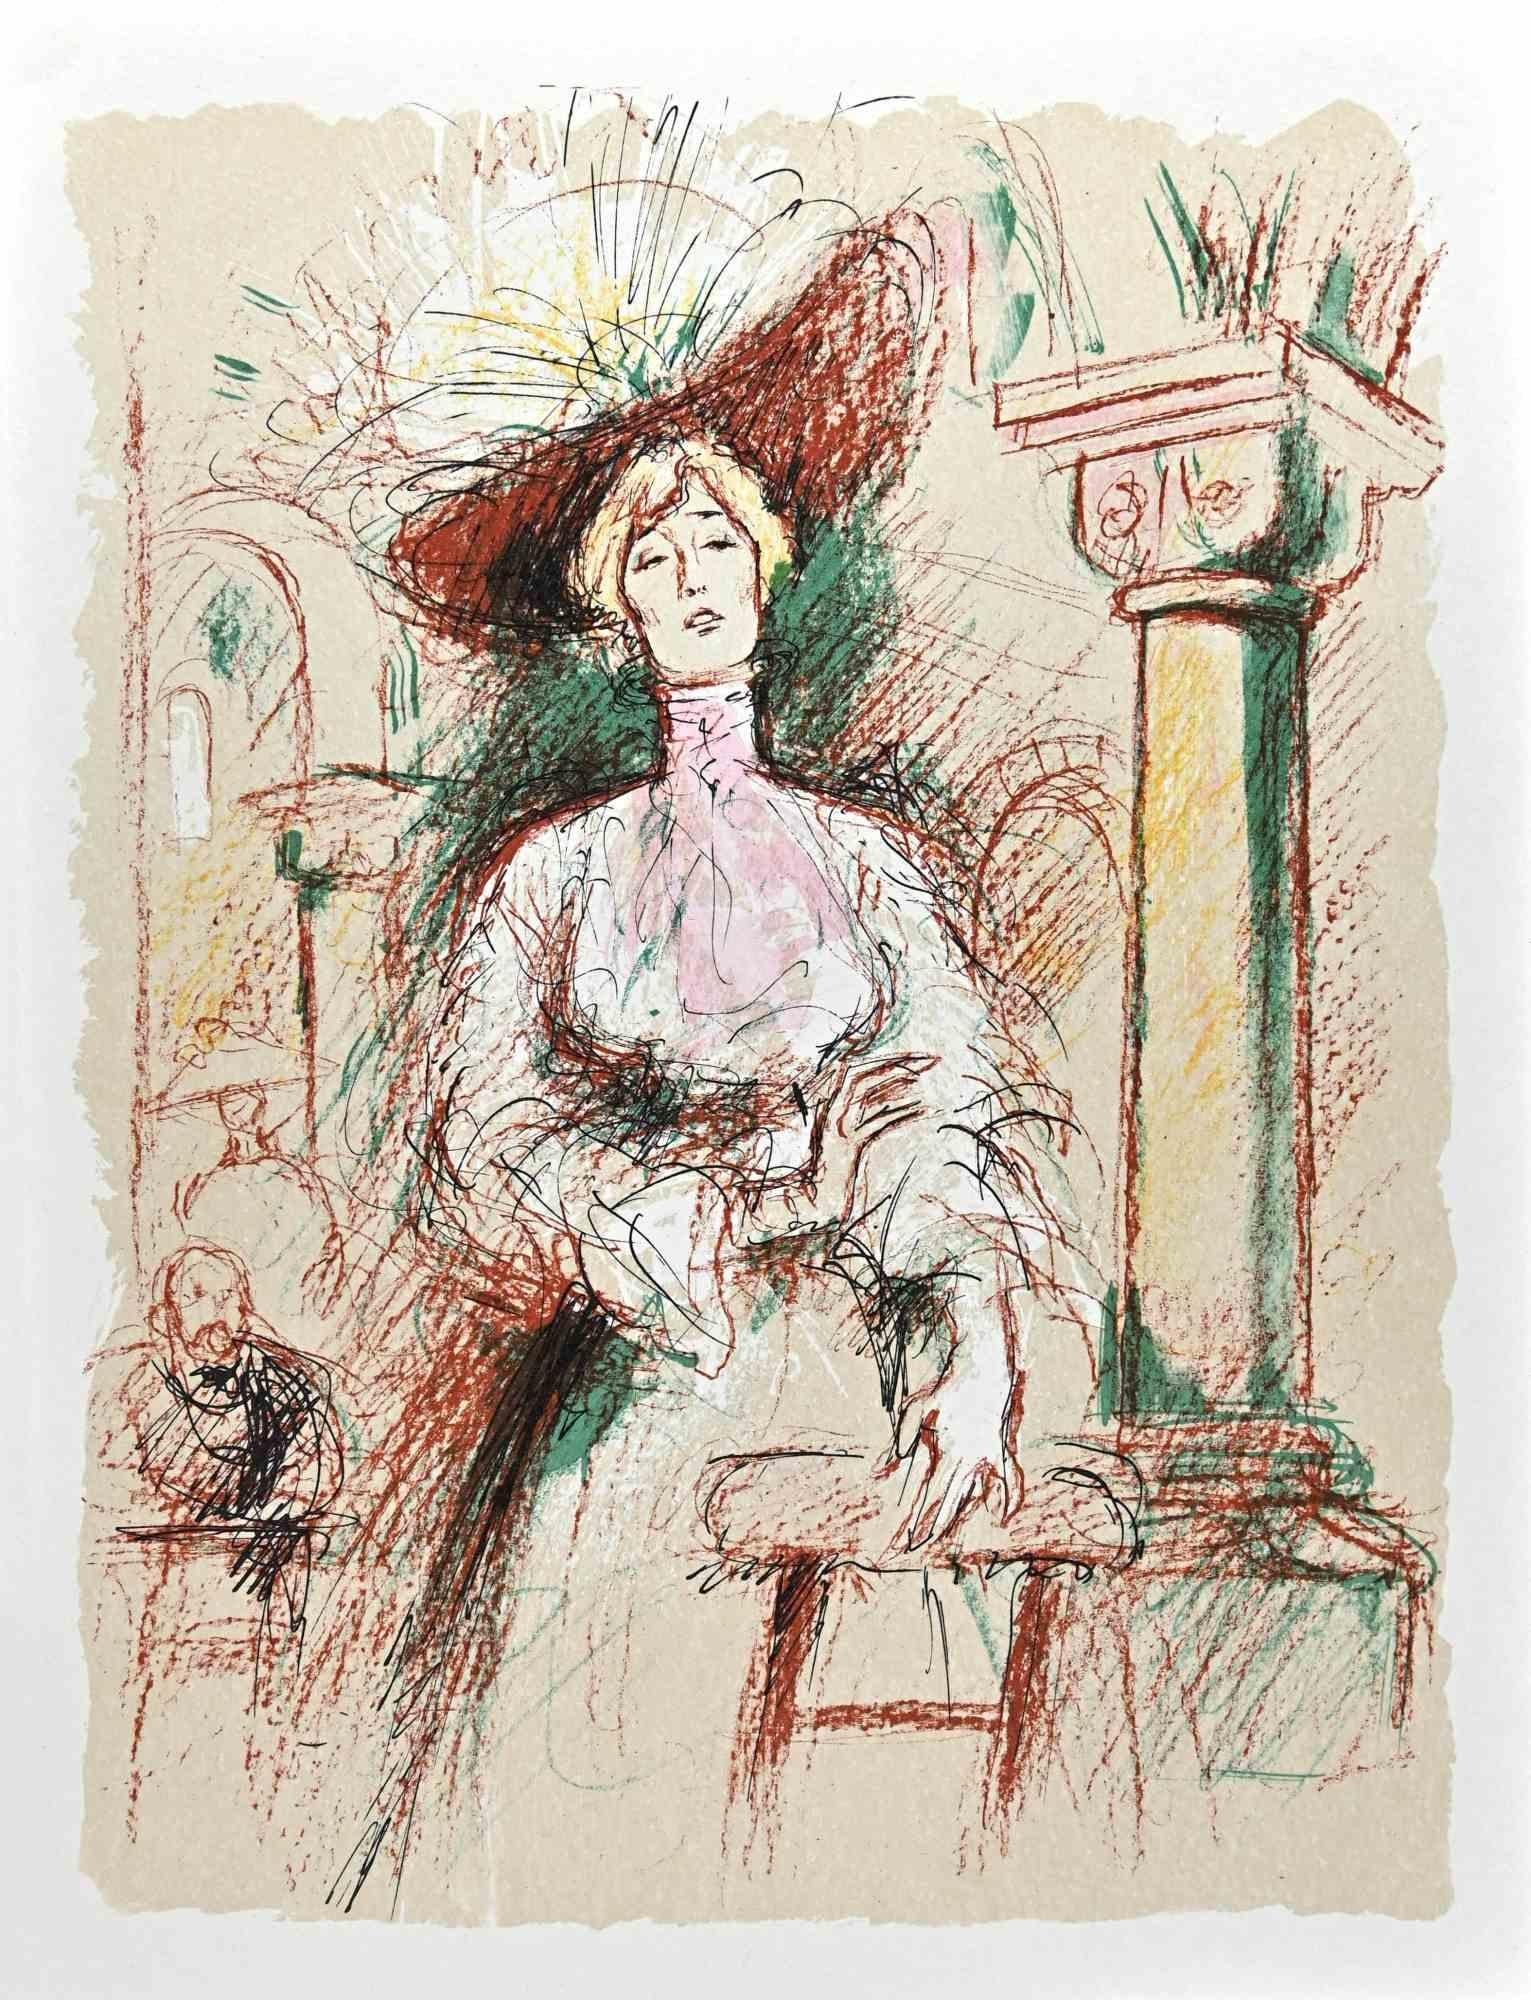 Frau ist eine Original-Lithographie von Jacques Pecnard aus der Mitte des 20. Jahrhunderts.

Gute Bedingungen.

Das Kunstwerk wird durch harmonische Farben in einer ausgewogenen Komposition dargestellt.